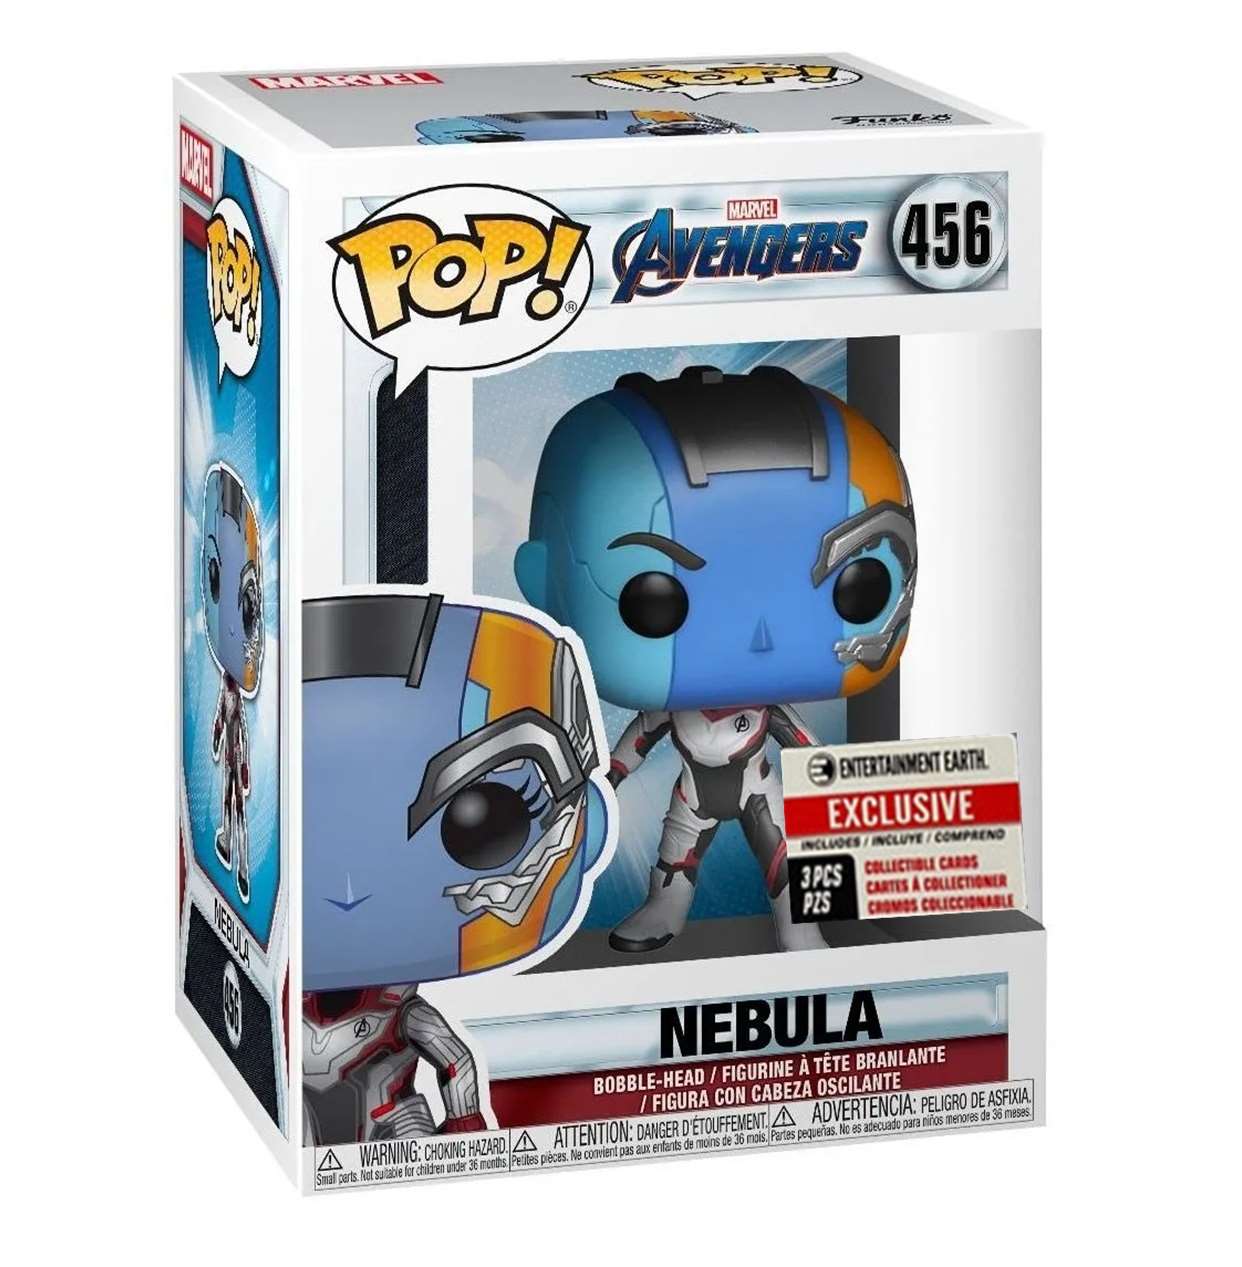 Nebula #456 Figura Funko Pop! Exclusivo Entertainment Earth